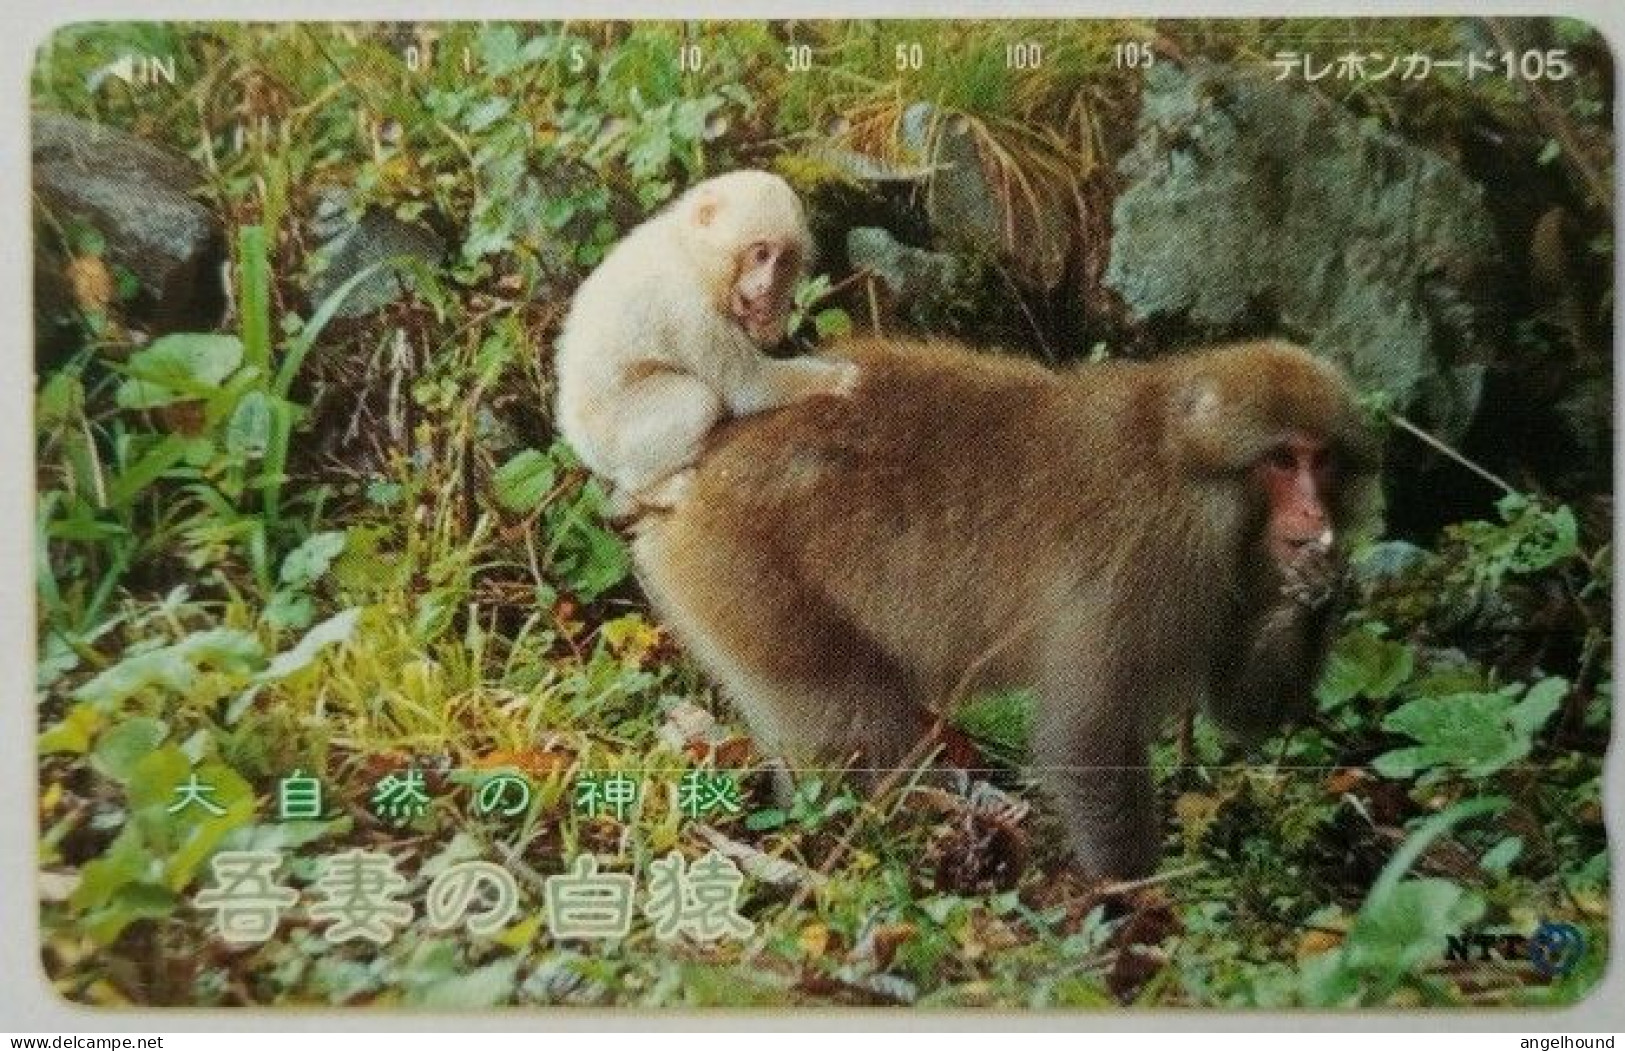 Japan 105 Units - Nature's Kandoriha Azuma's - White Monkey - Japon